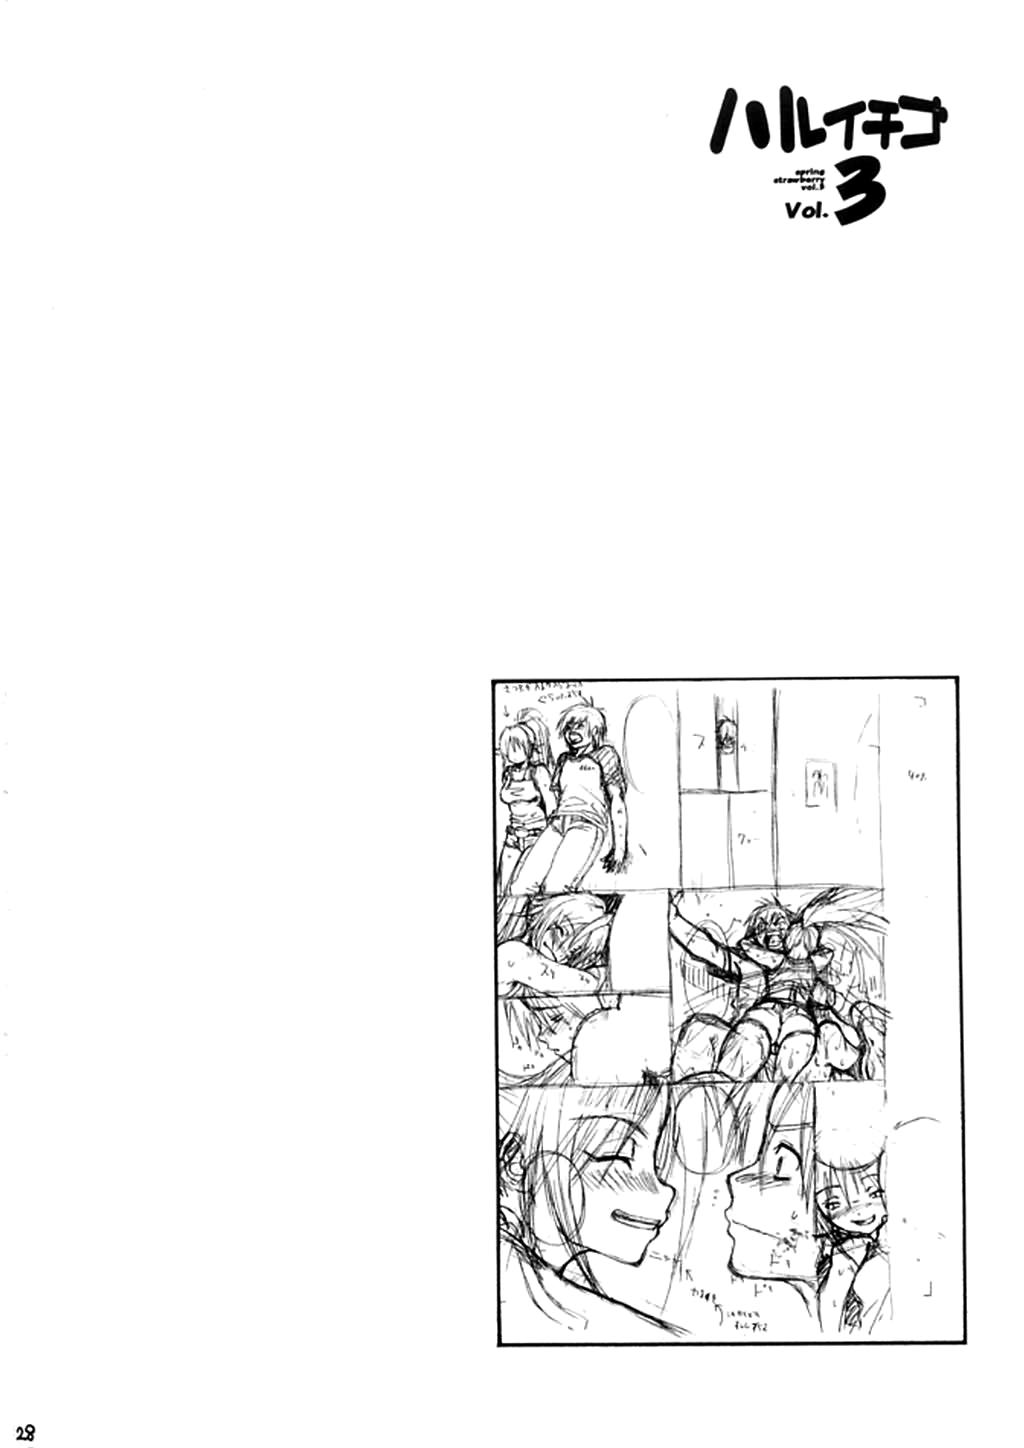 Haru Ichigo Vol. 3 - Spring Strawberry Vol. 3 23